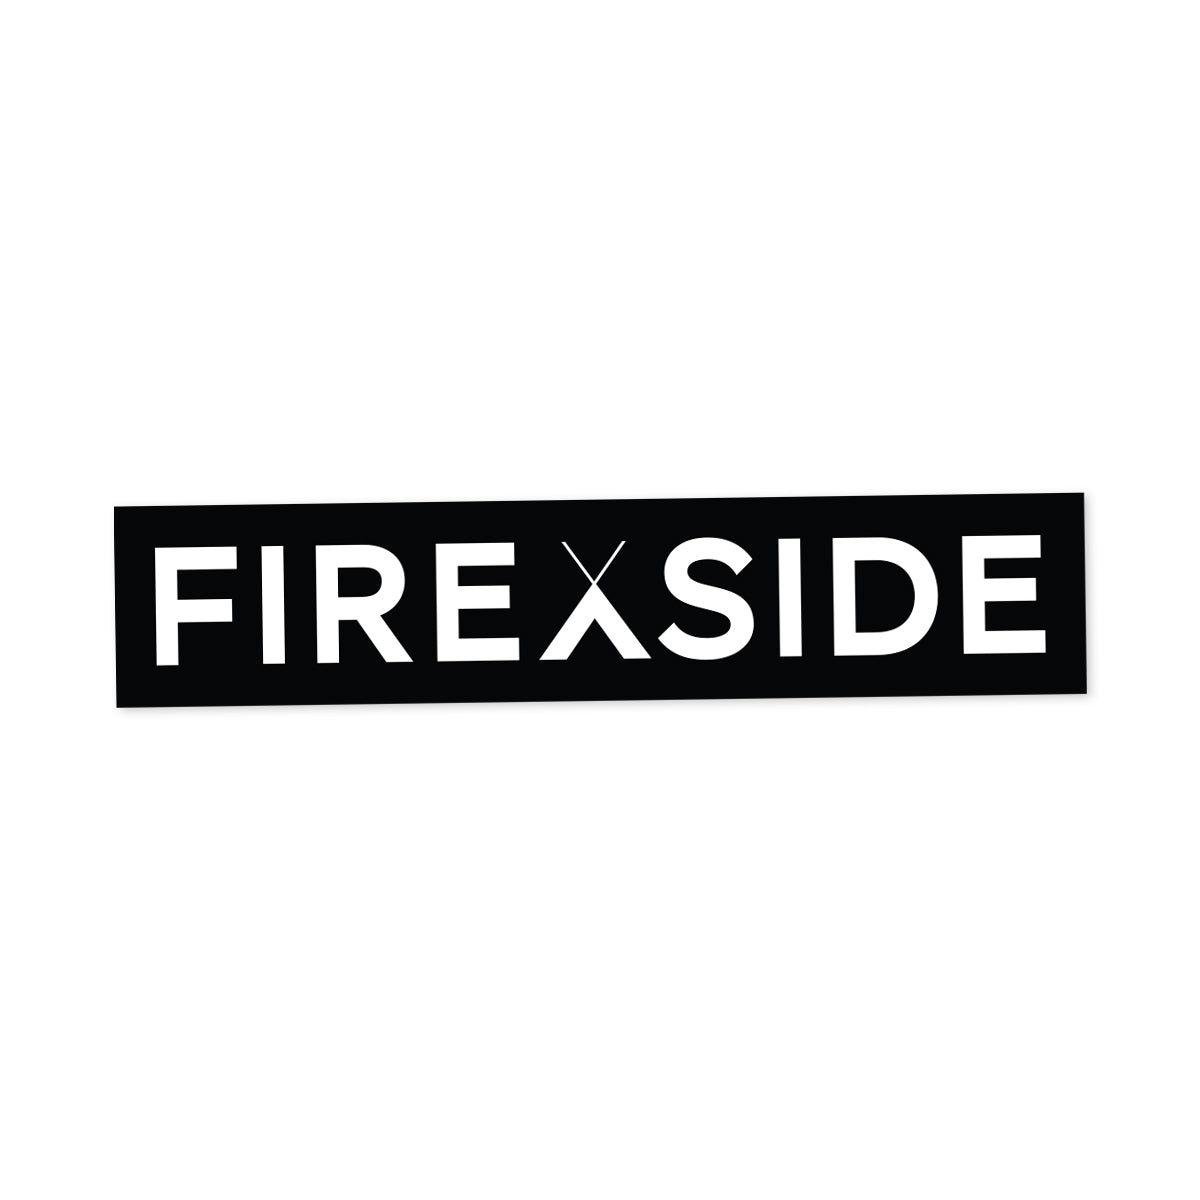 FIREXSIDE 8" - Sticker - FIREXSIDE 